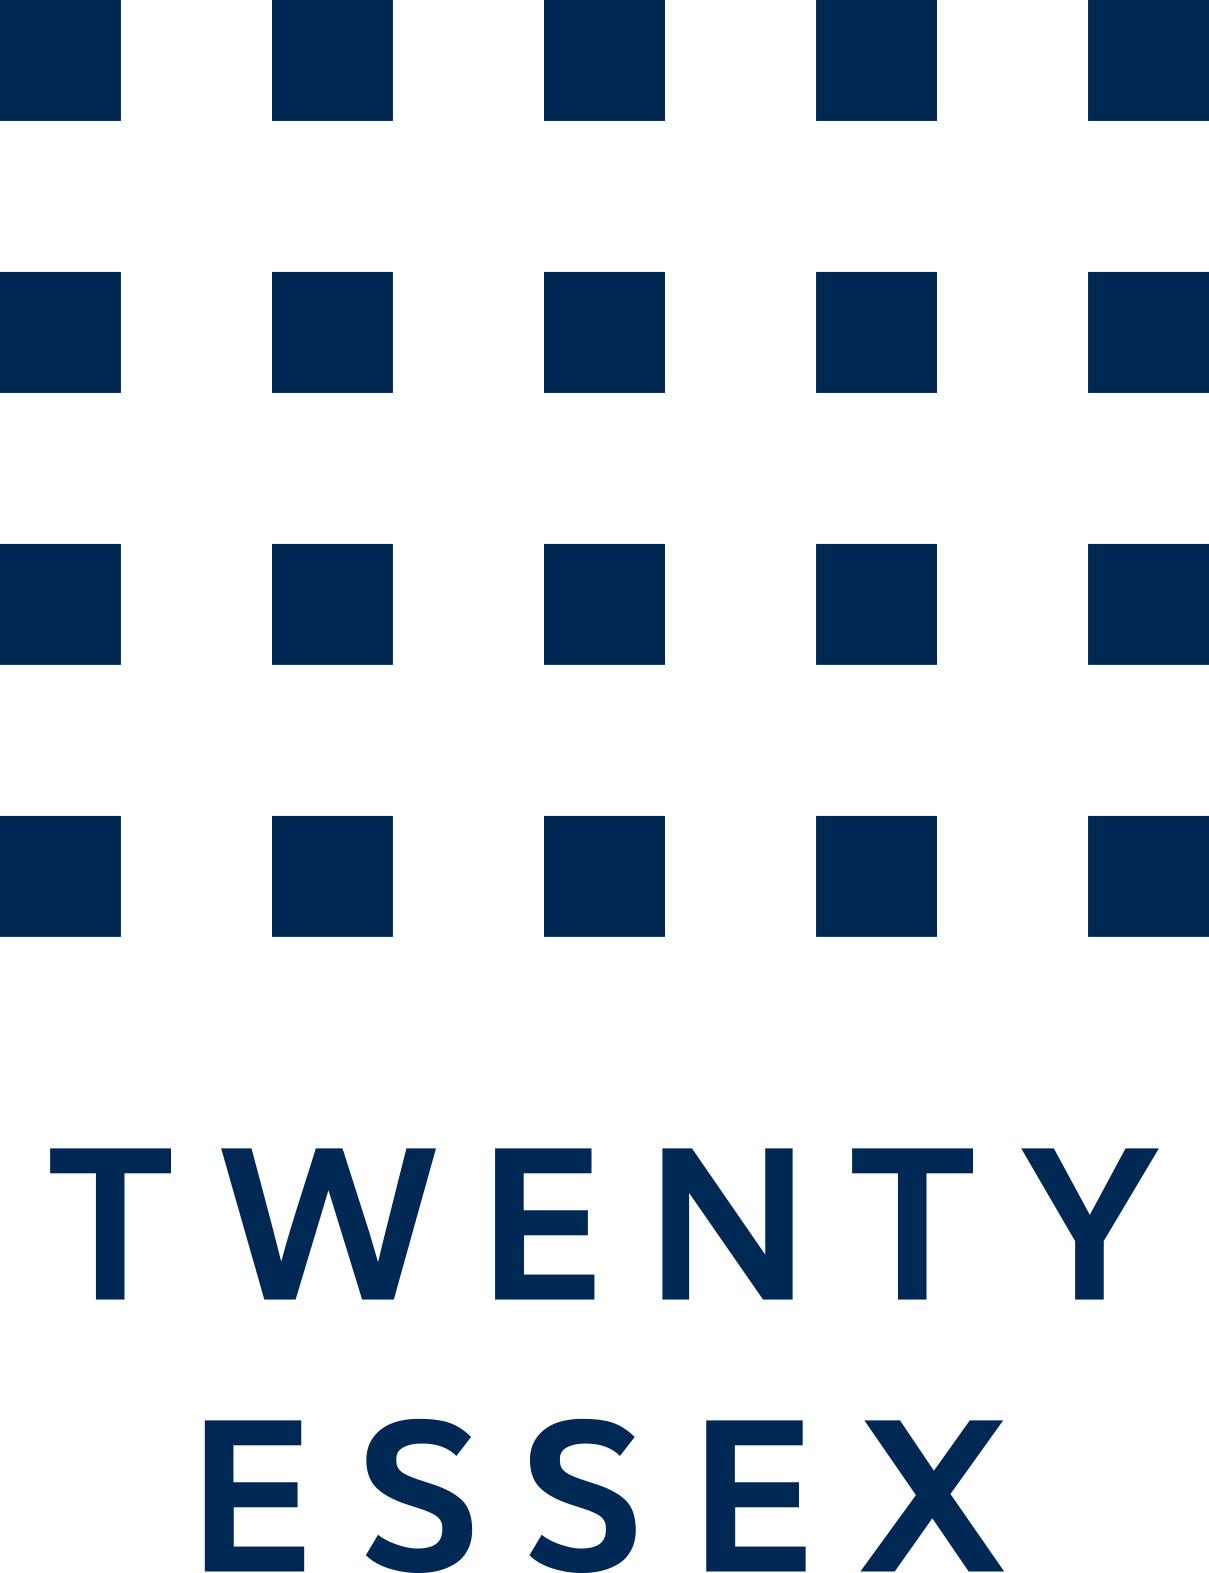 Twenty Essex logo